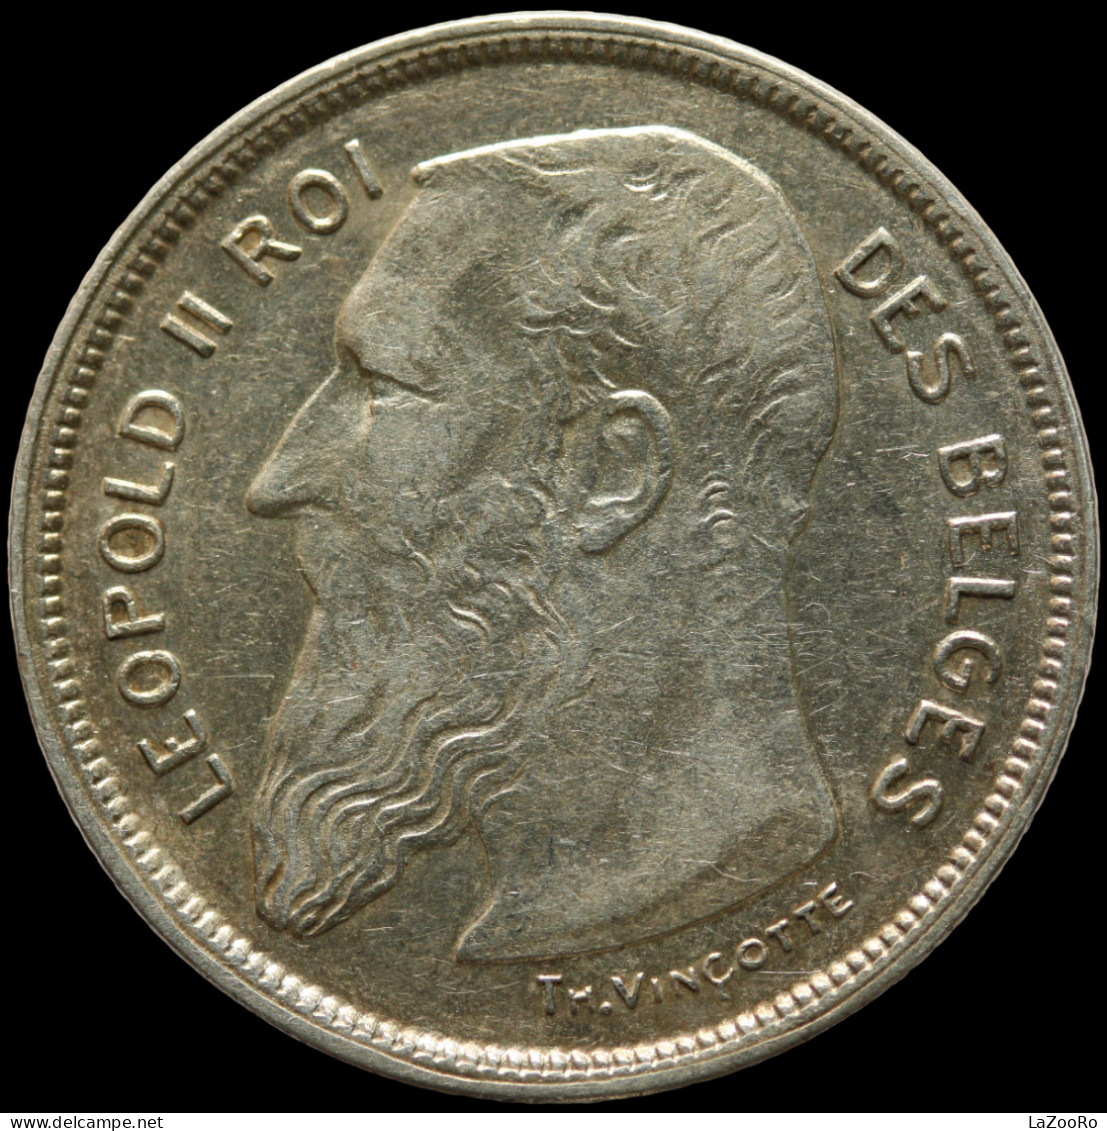 LaZooRo: Belgium 2 Francs 1909 XF / UNC - Silver - 2 Francs